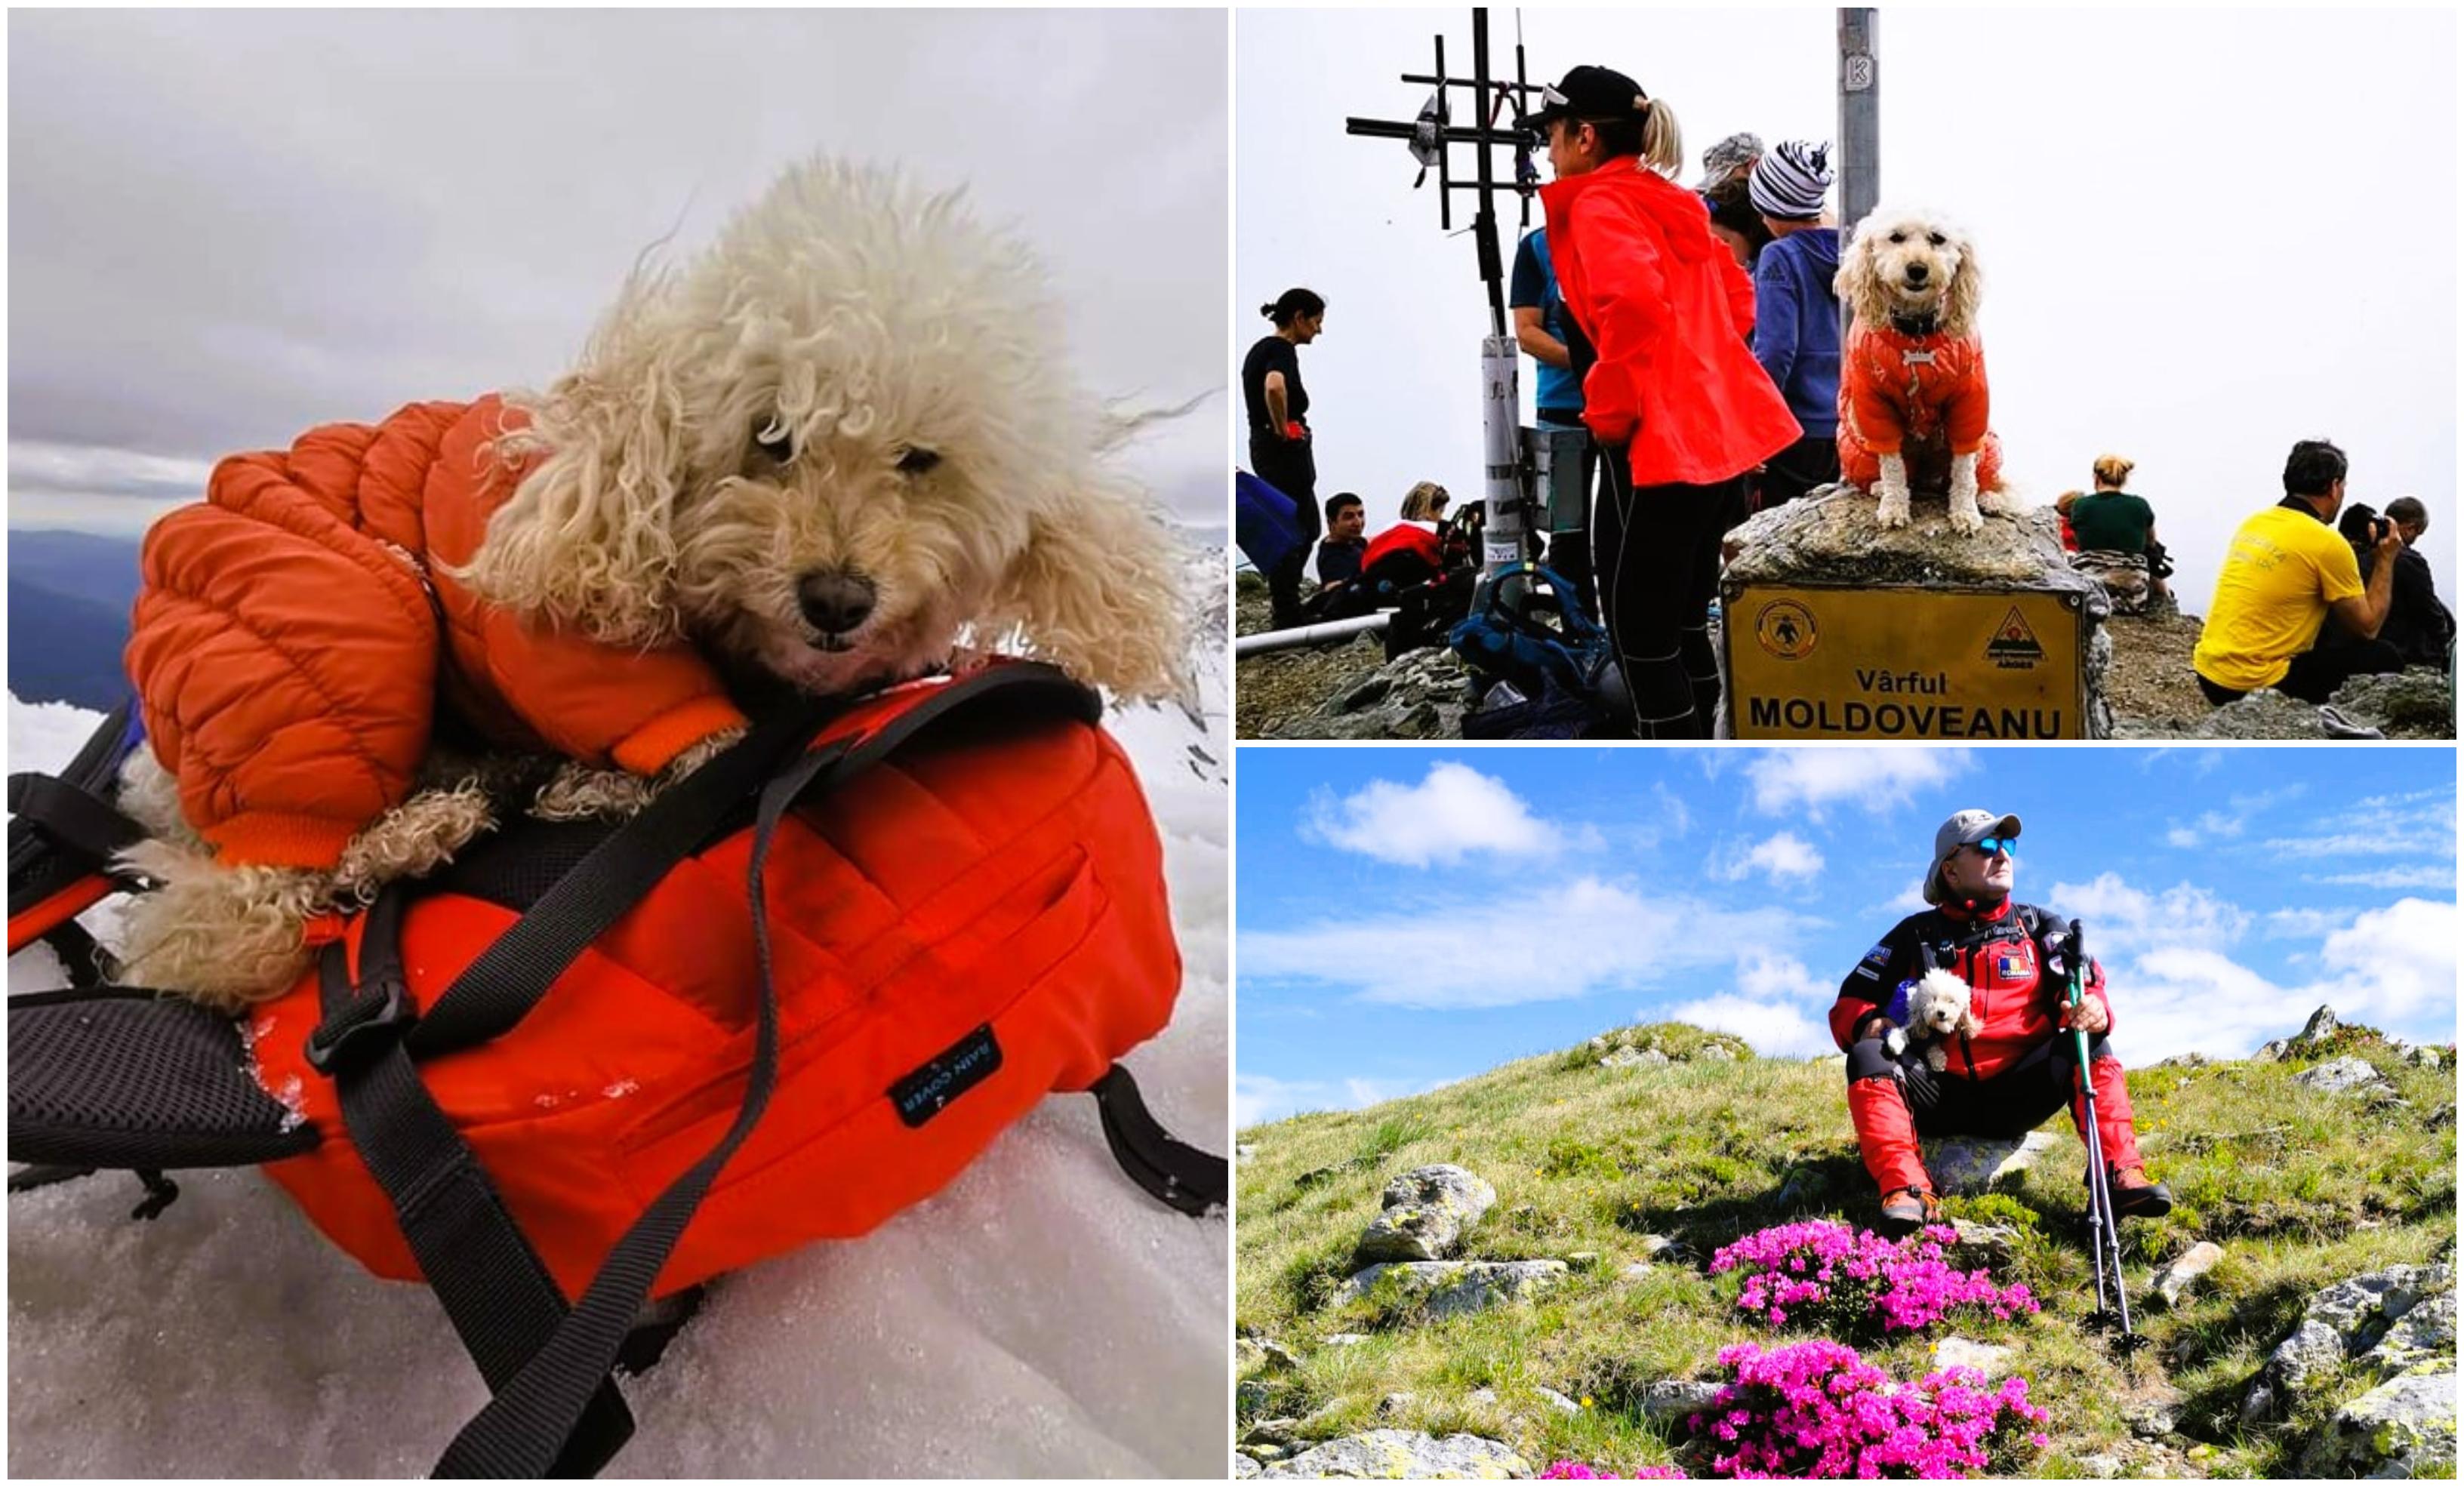 Zoe Alpinista, căţeluşa care a cucerit 37 de vârfuri montane. Stăpânul ei, Daniel, e mândru că o are drept partener de aventură: "Mulţi vor să facă poze cu ea"